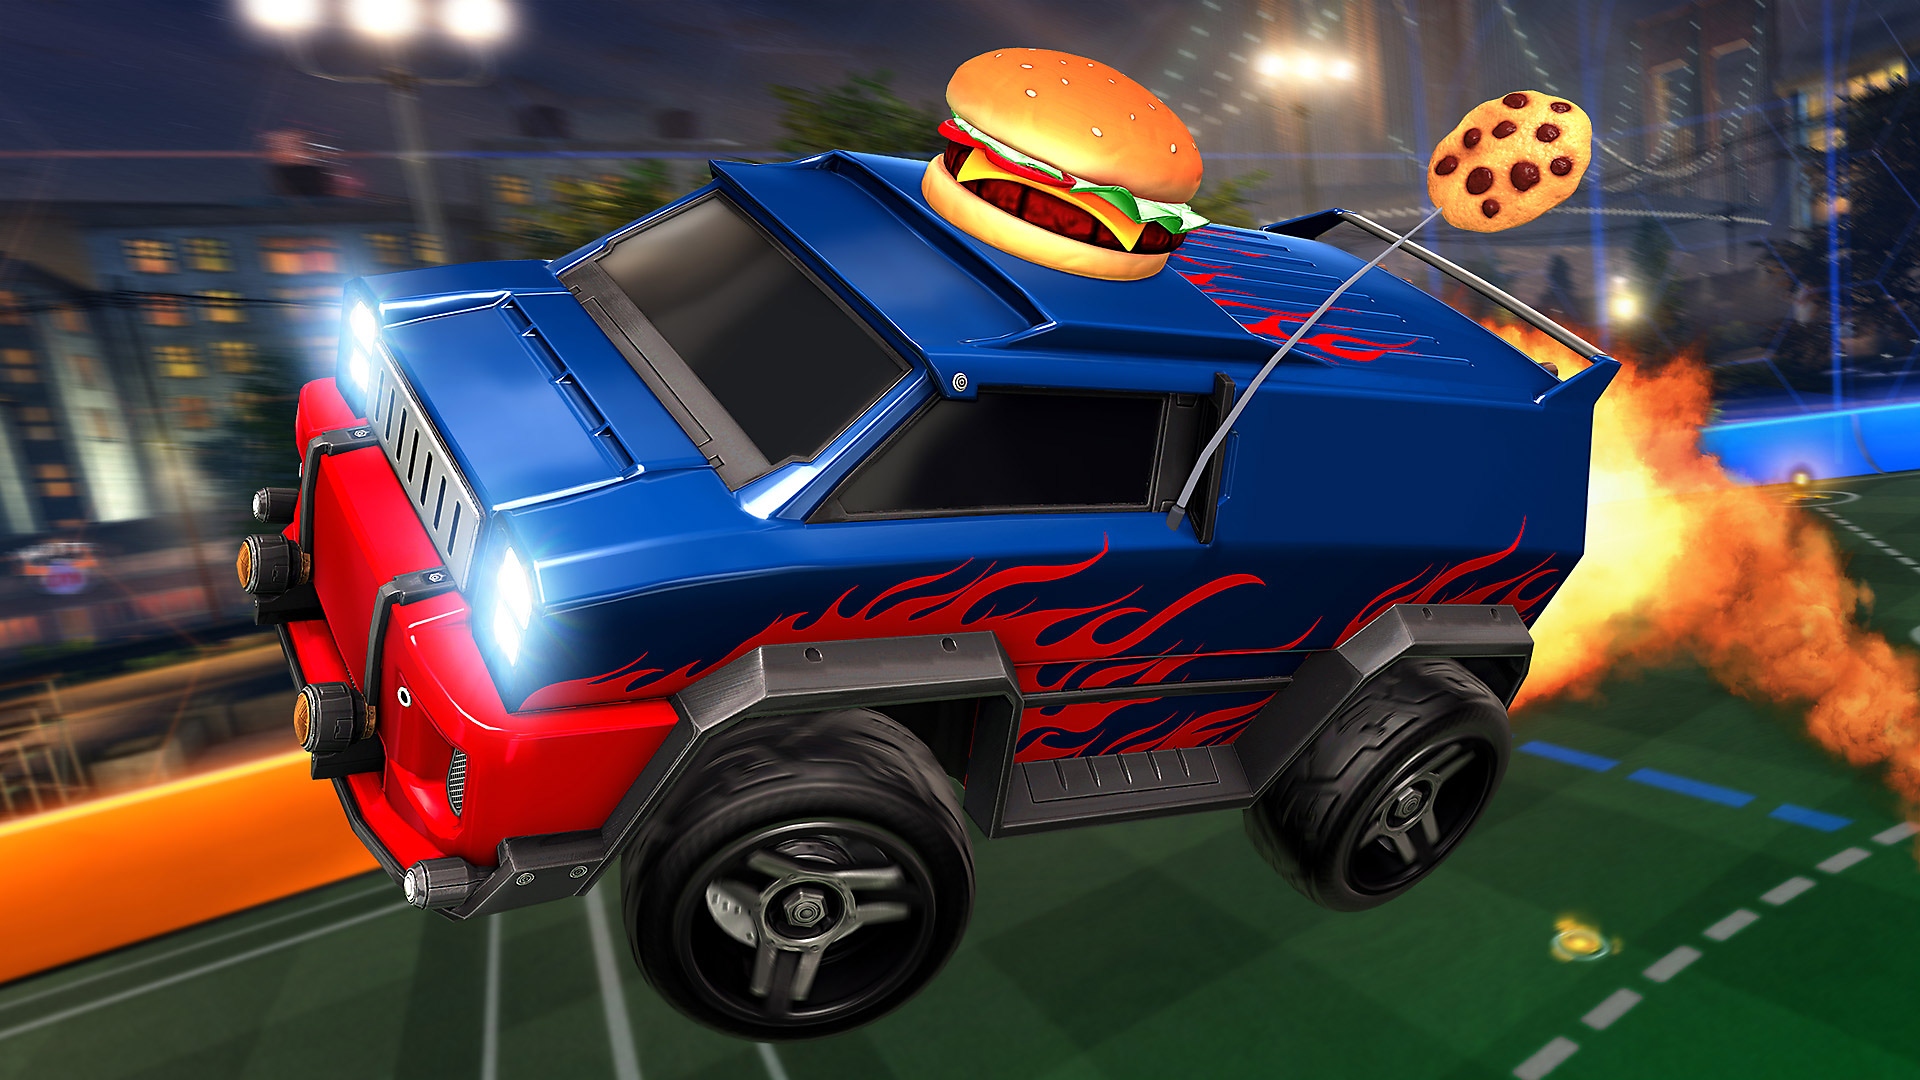 Rocket League – снимок экрана, на котором изображен сине-красный фургон с бургером на крыше